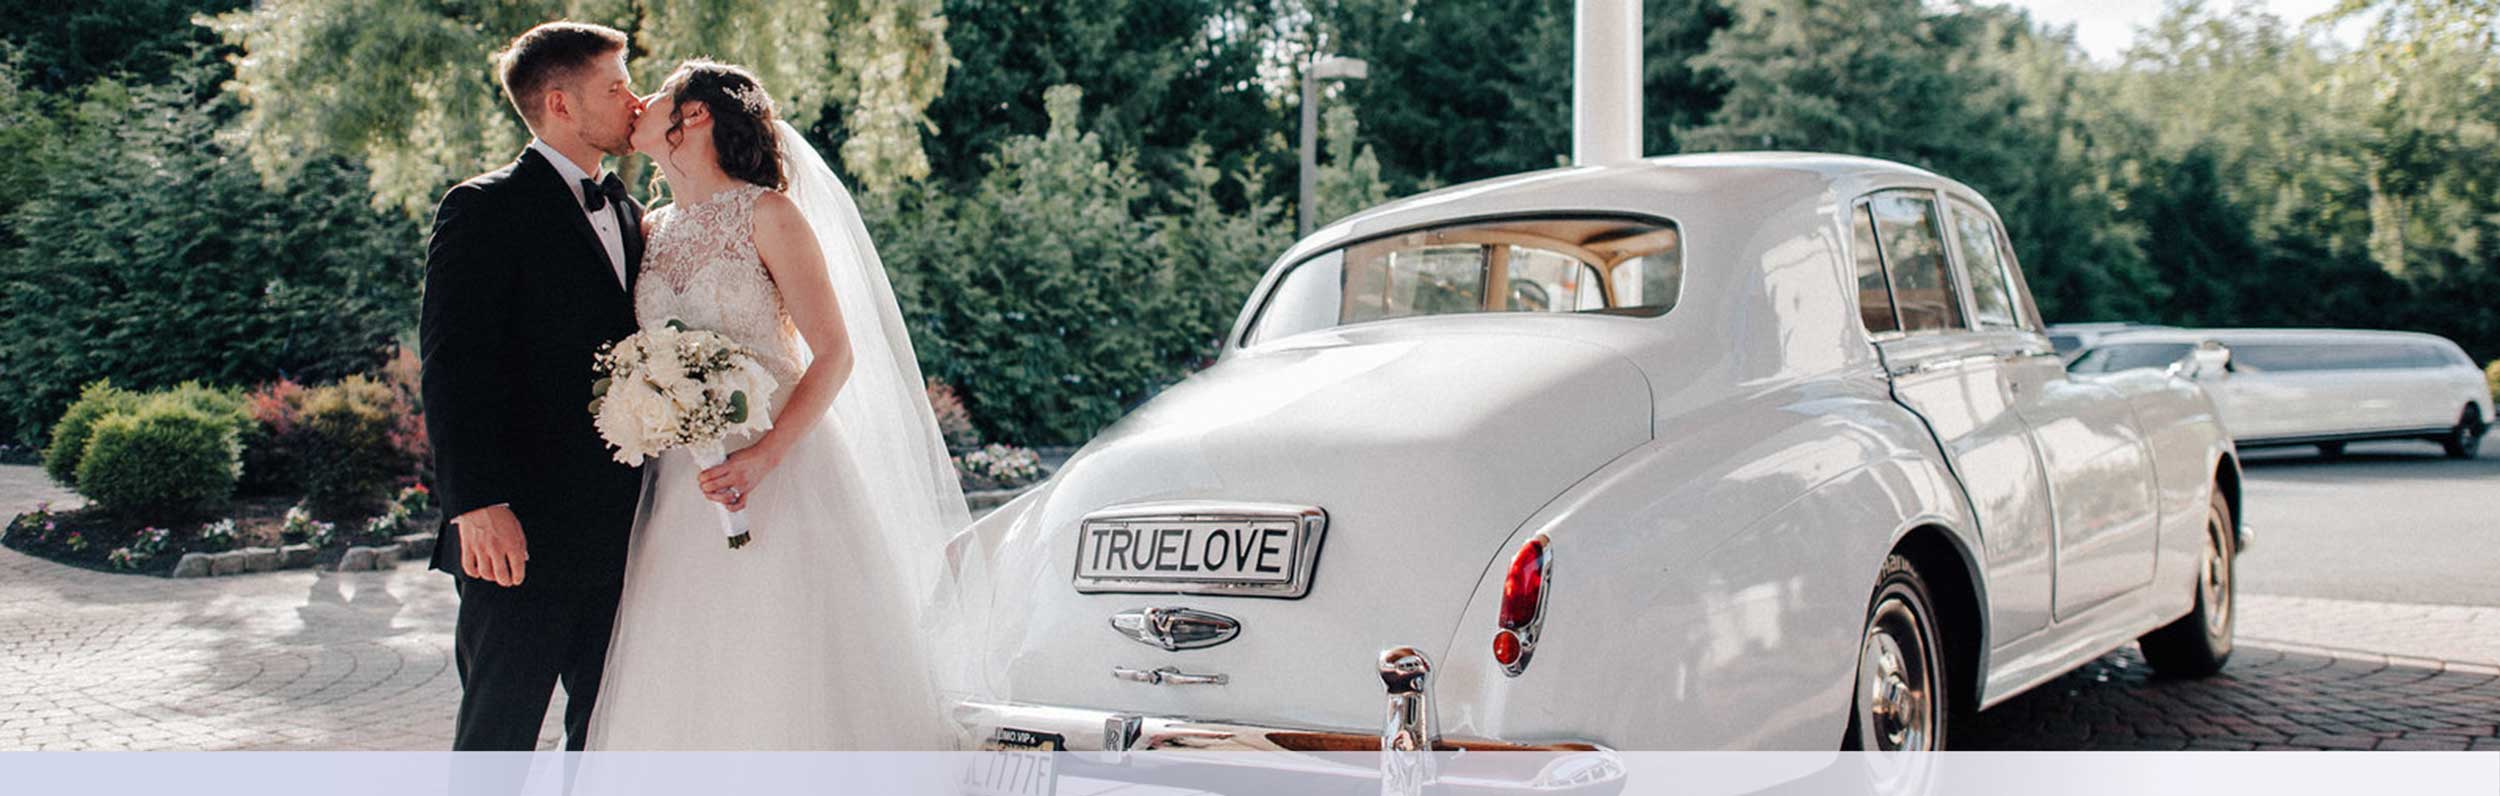 Vintage Car Wedding Reception Drop Off